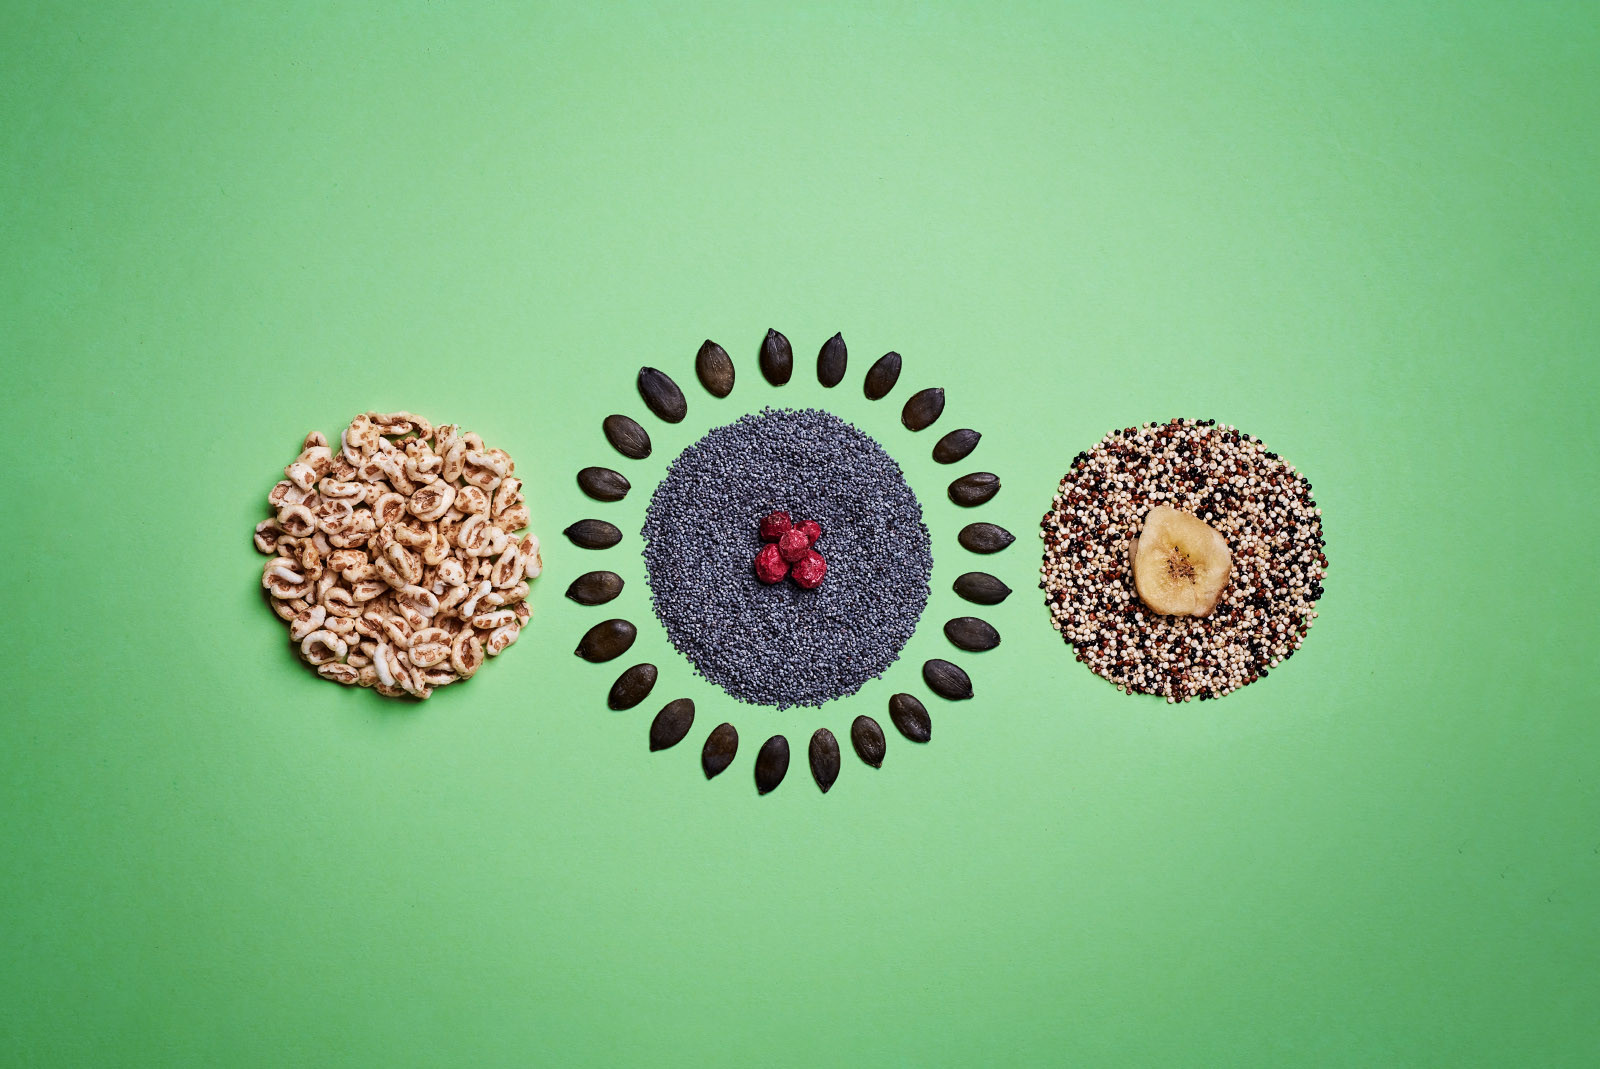 Runde formen aus, Quinoa, Flakes und Flocken, fotografiert auf grünem Untergrund